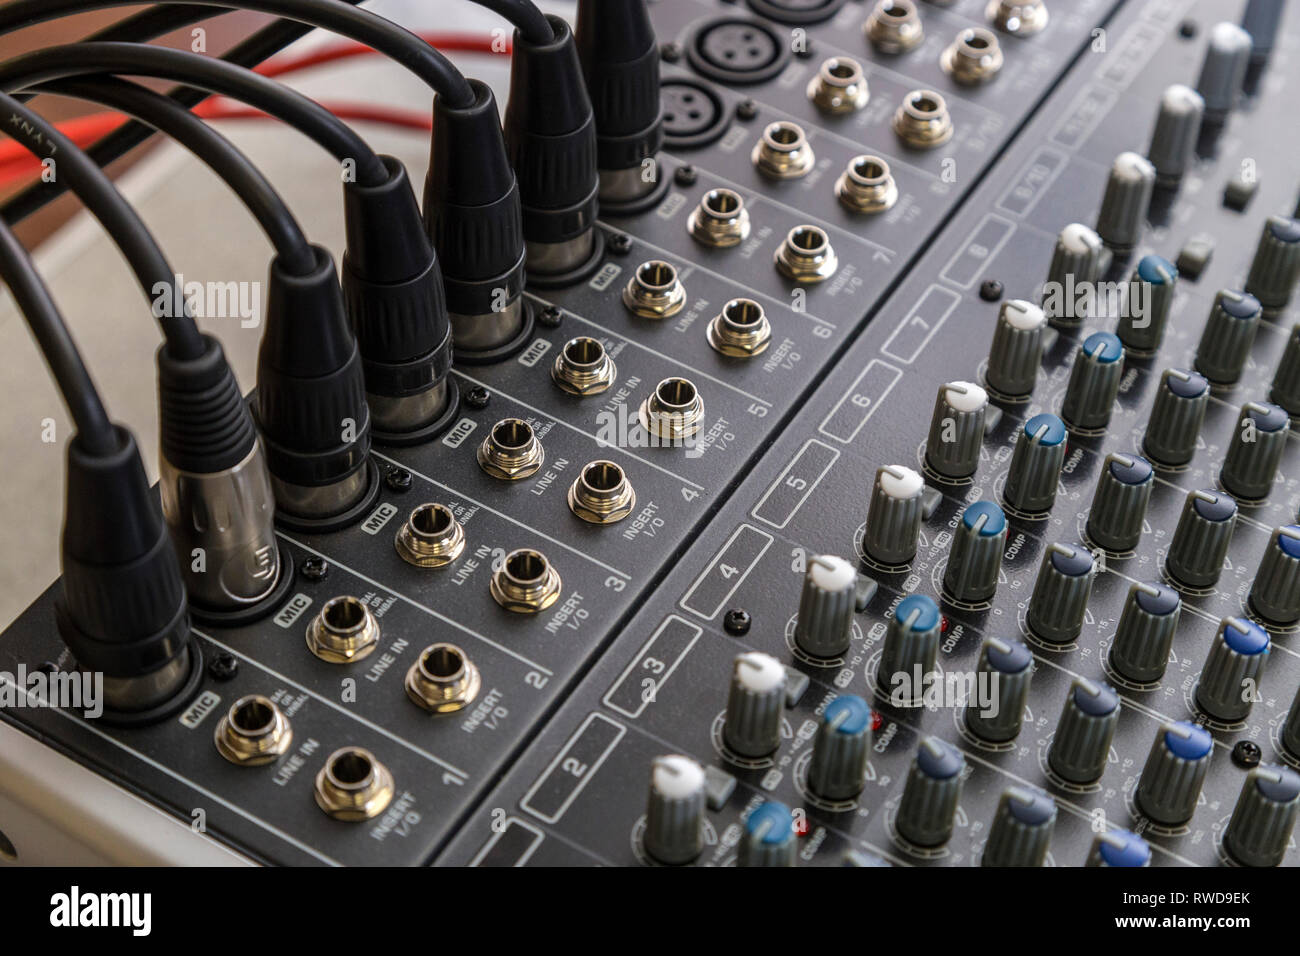 Audio-Sound-Mixpult mit 7 xlr-Mikrofoneingängen in Verwendung  Stockfotografie - Alamy